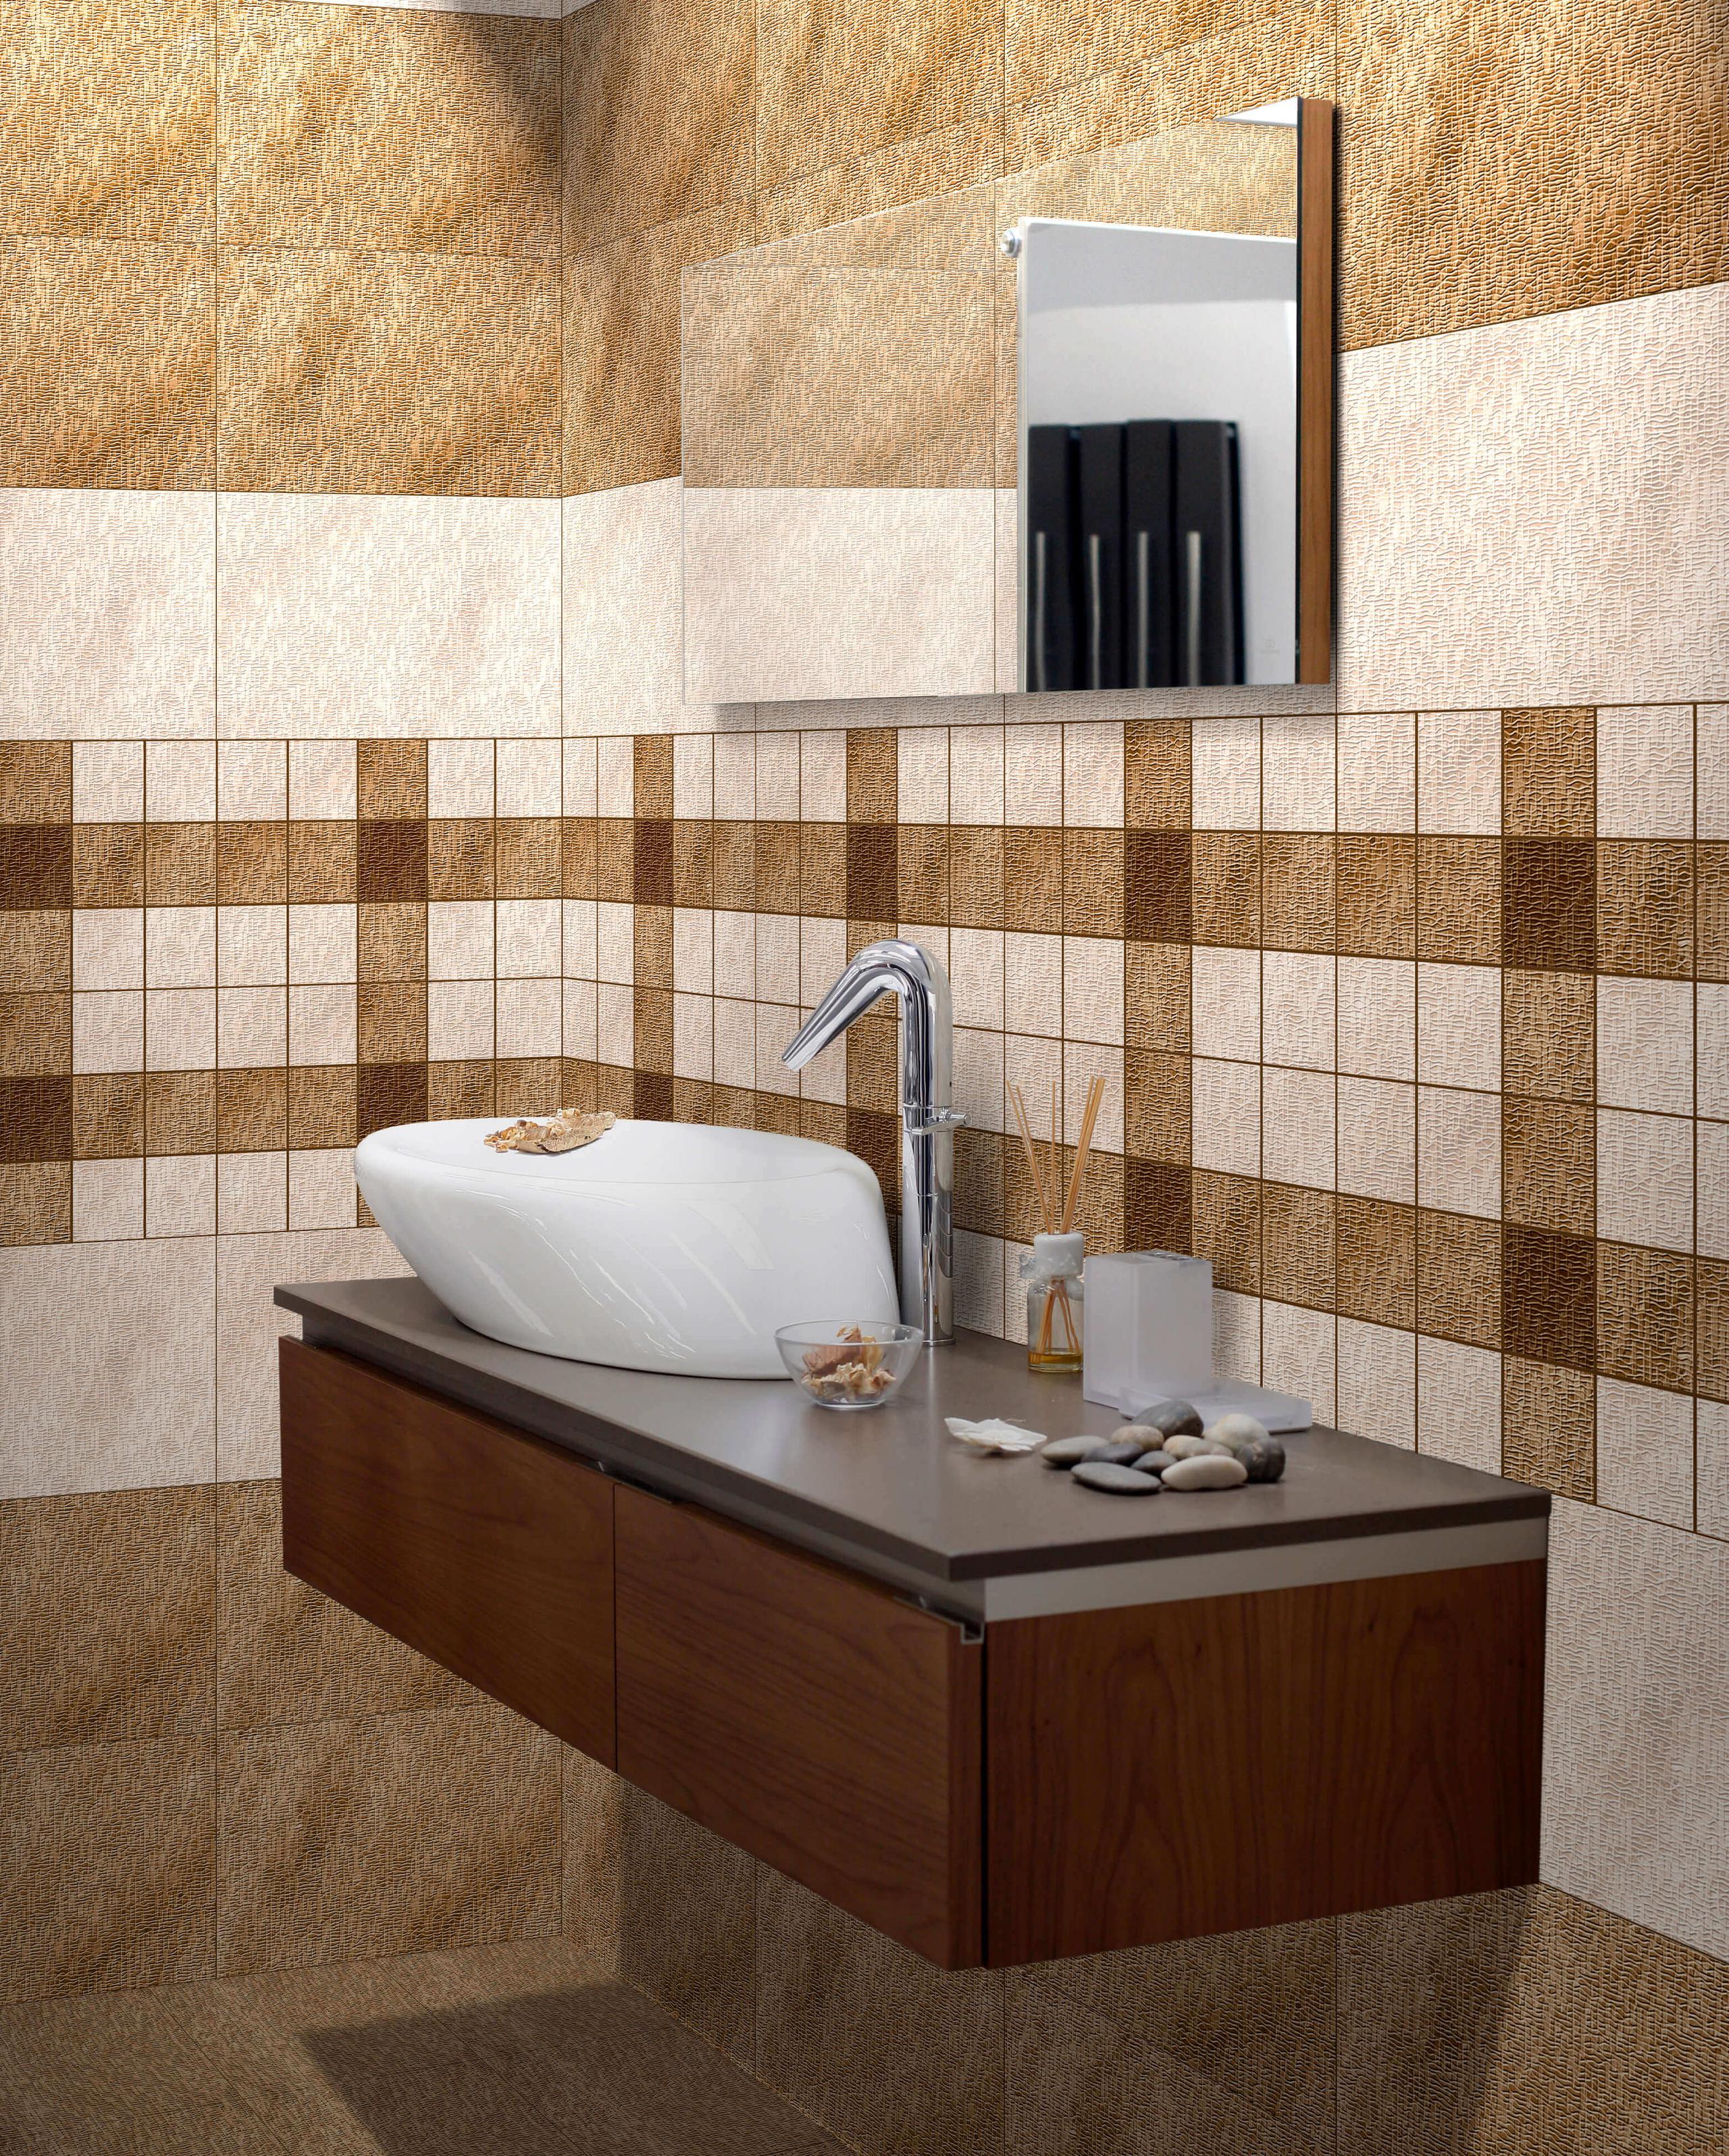 Ivory Tiles for Bathroom Tiles, Kitchen Tiles